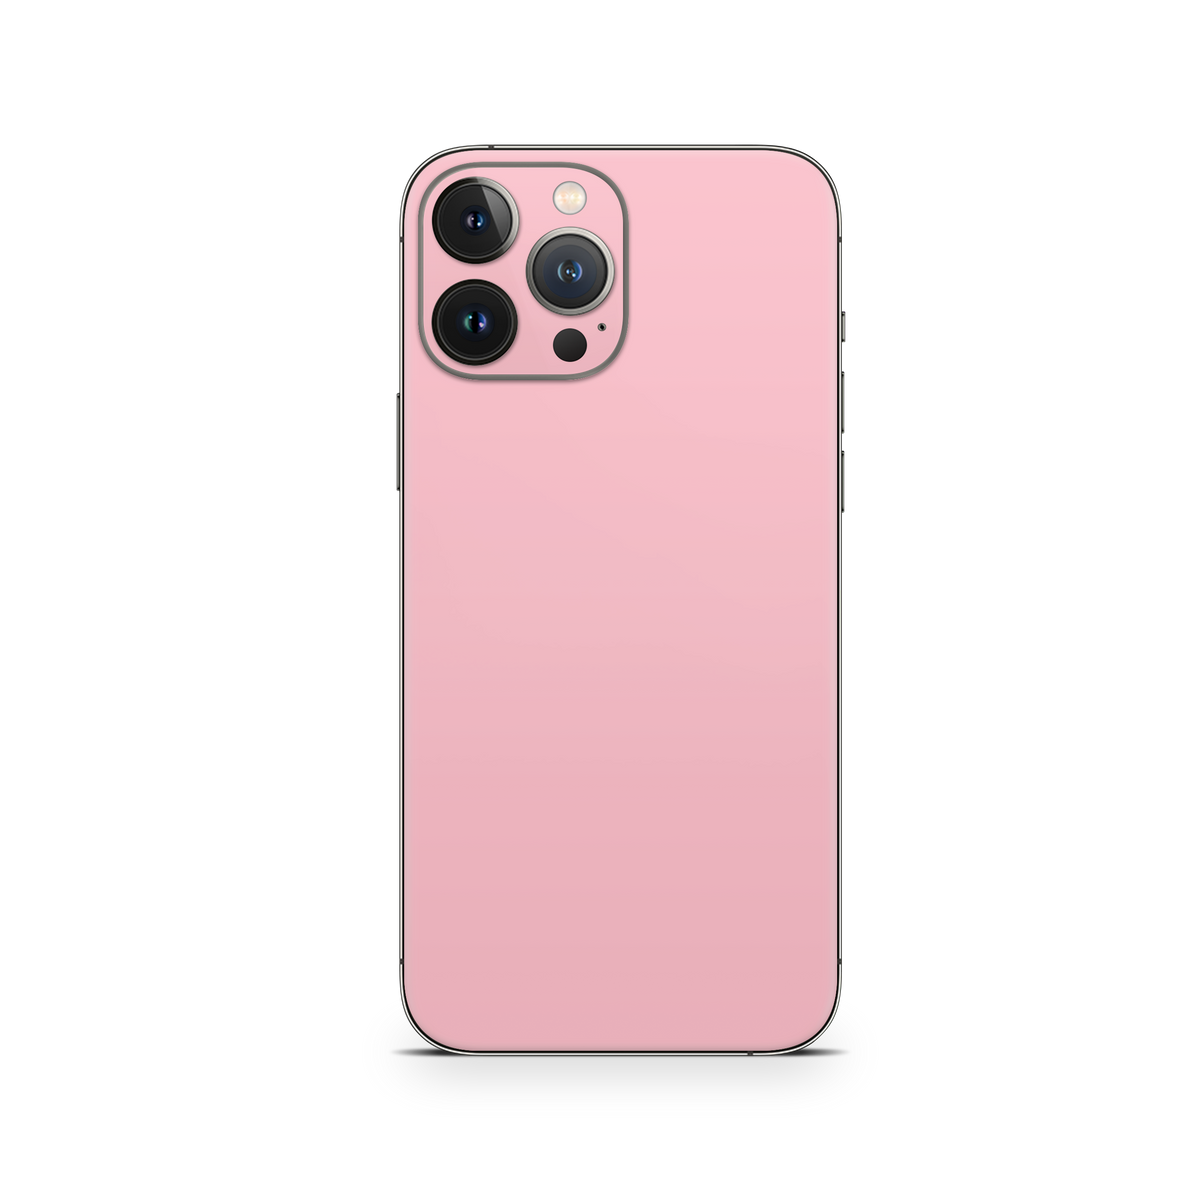 Apple iPhone Blush Pink Skin